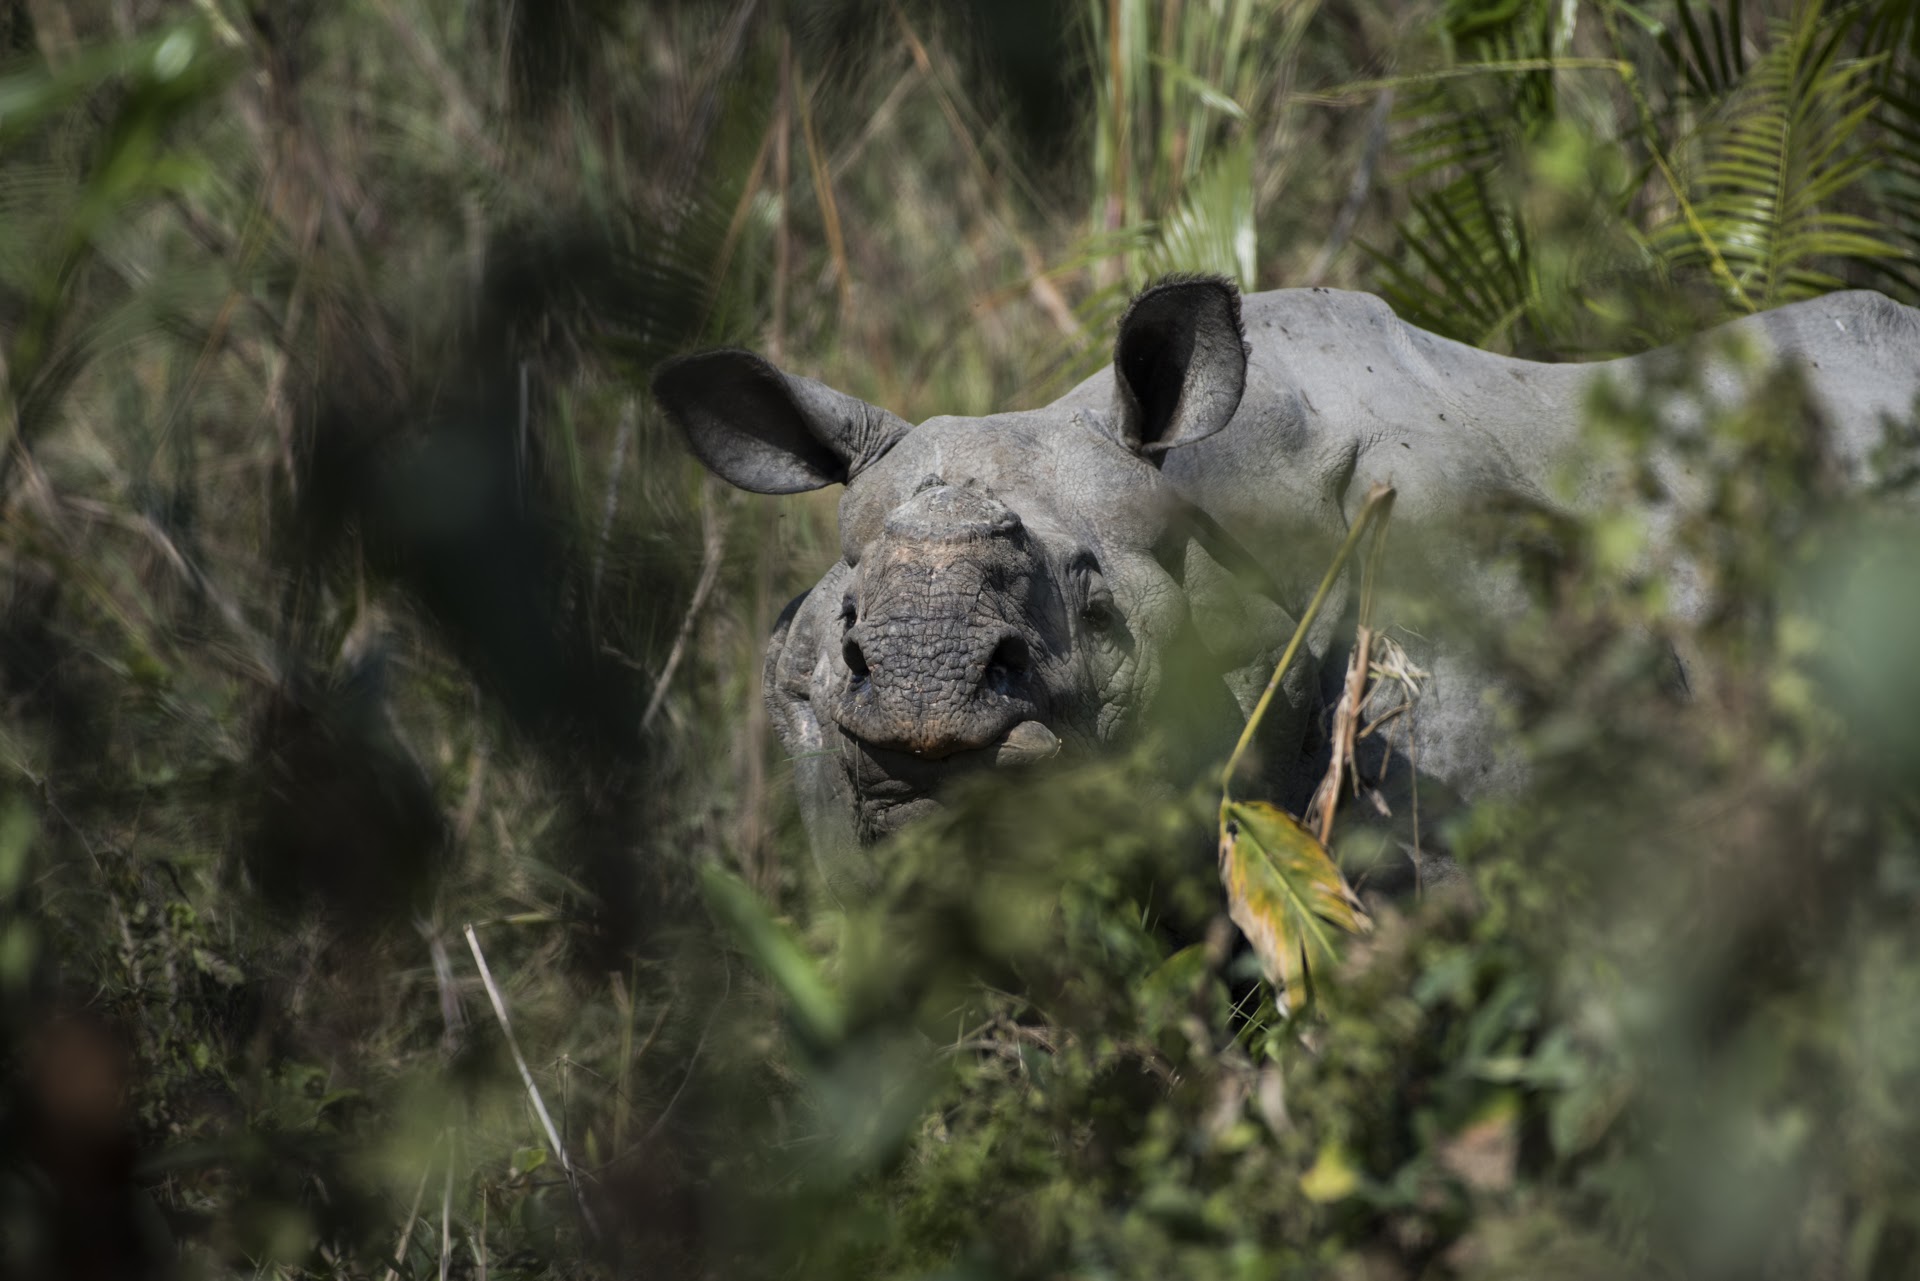 Rhino nose